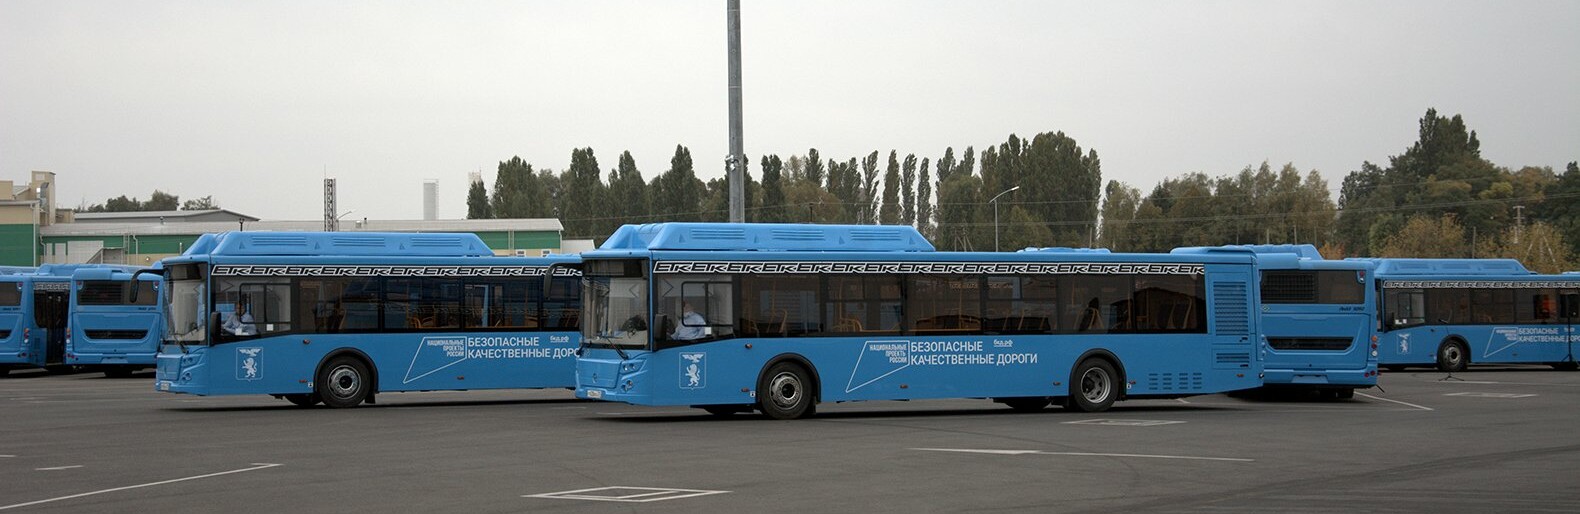 Белгородский губернатор попросил у Путина автобусы для школ и задач Минобороны